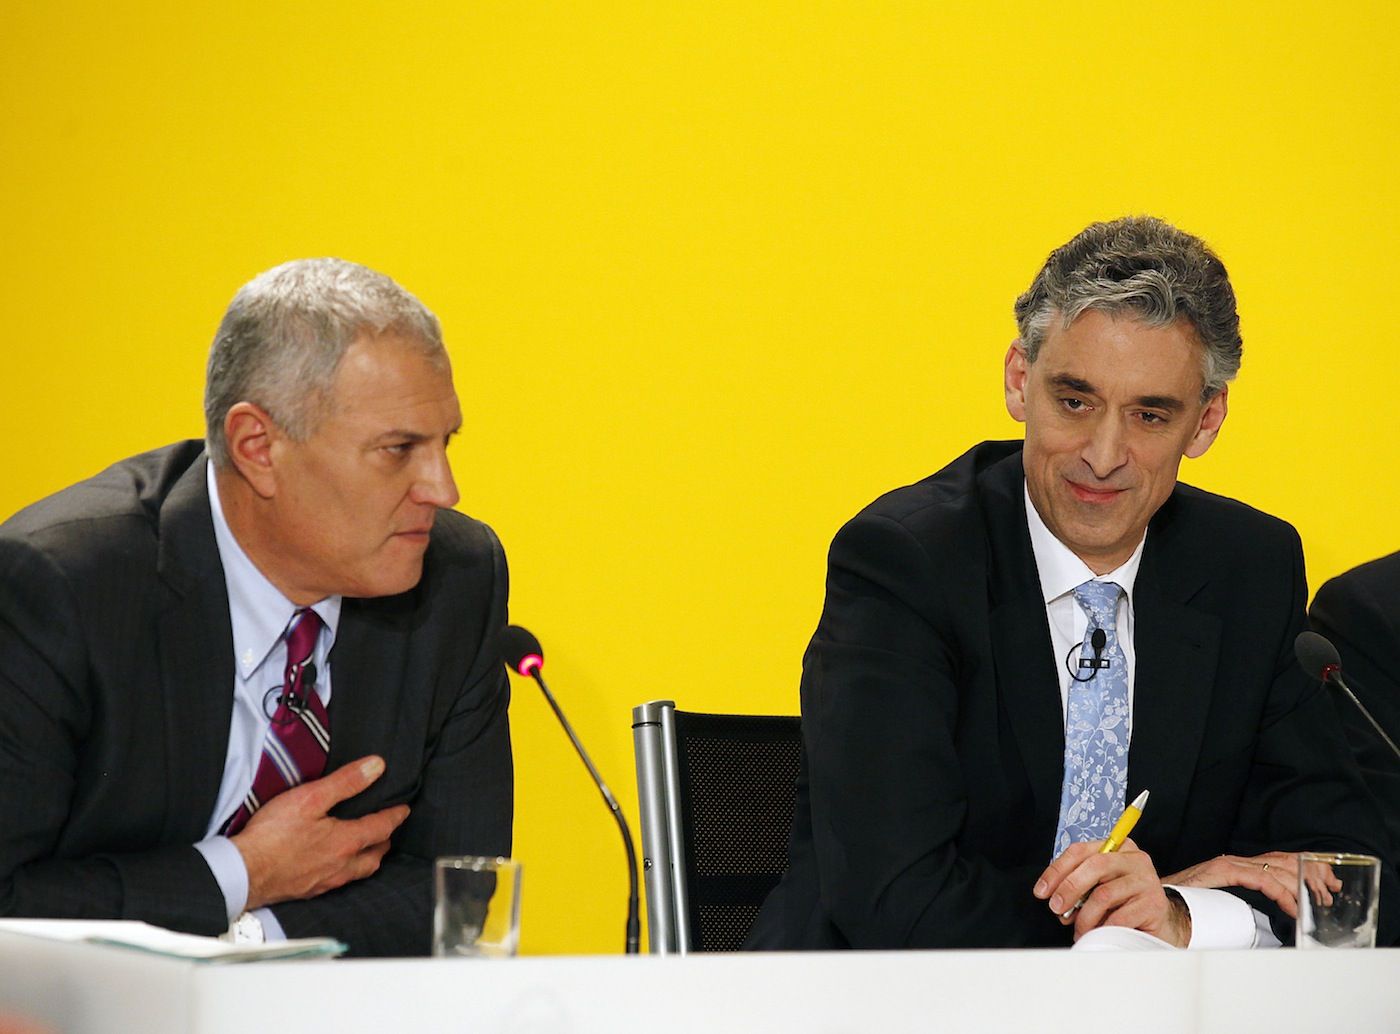 Frank Appel y Larry Rosen, durante la presentacion de los resultados de DP del tercer trimestre 2012